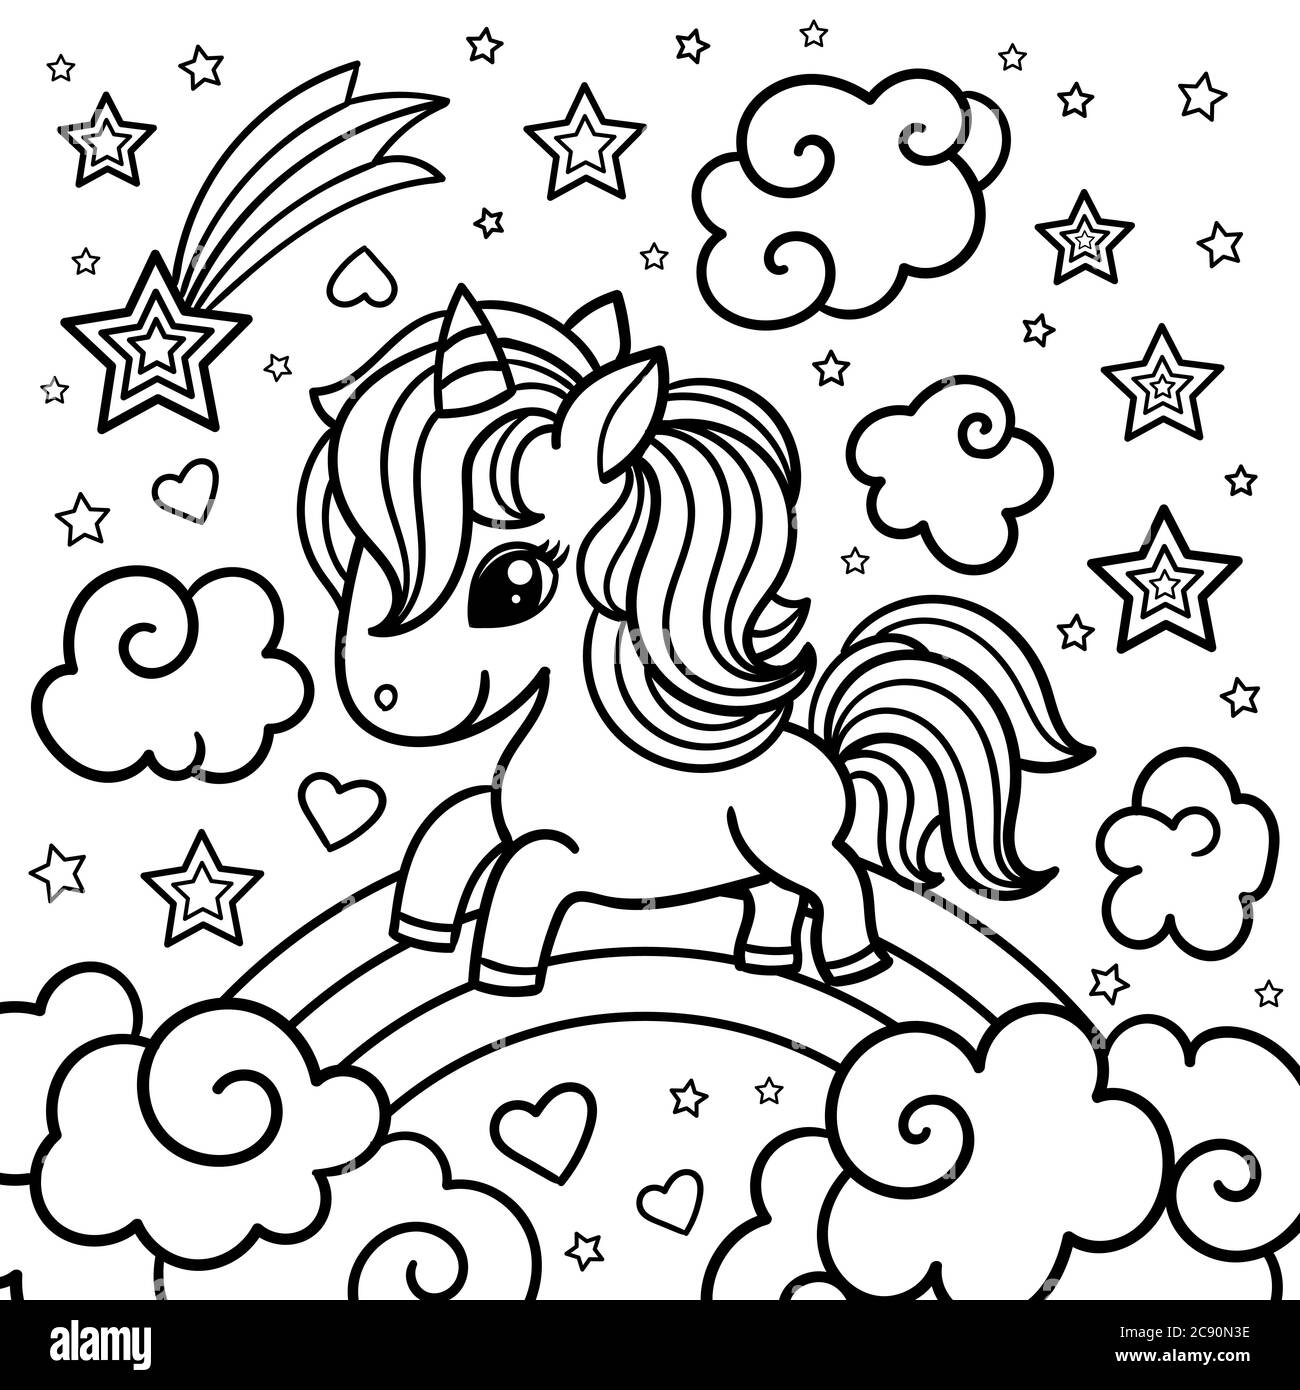 Simpatico unicorno fantasy su un arcobaleno tra le nuvole. Bianco e nero. Per stampe di design, poster, libri da colorare, tatuaggio e così via. Vettore Illustrazione Vettoriale